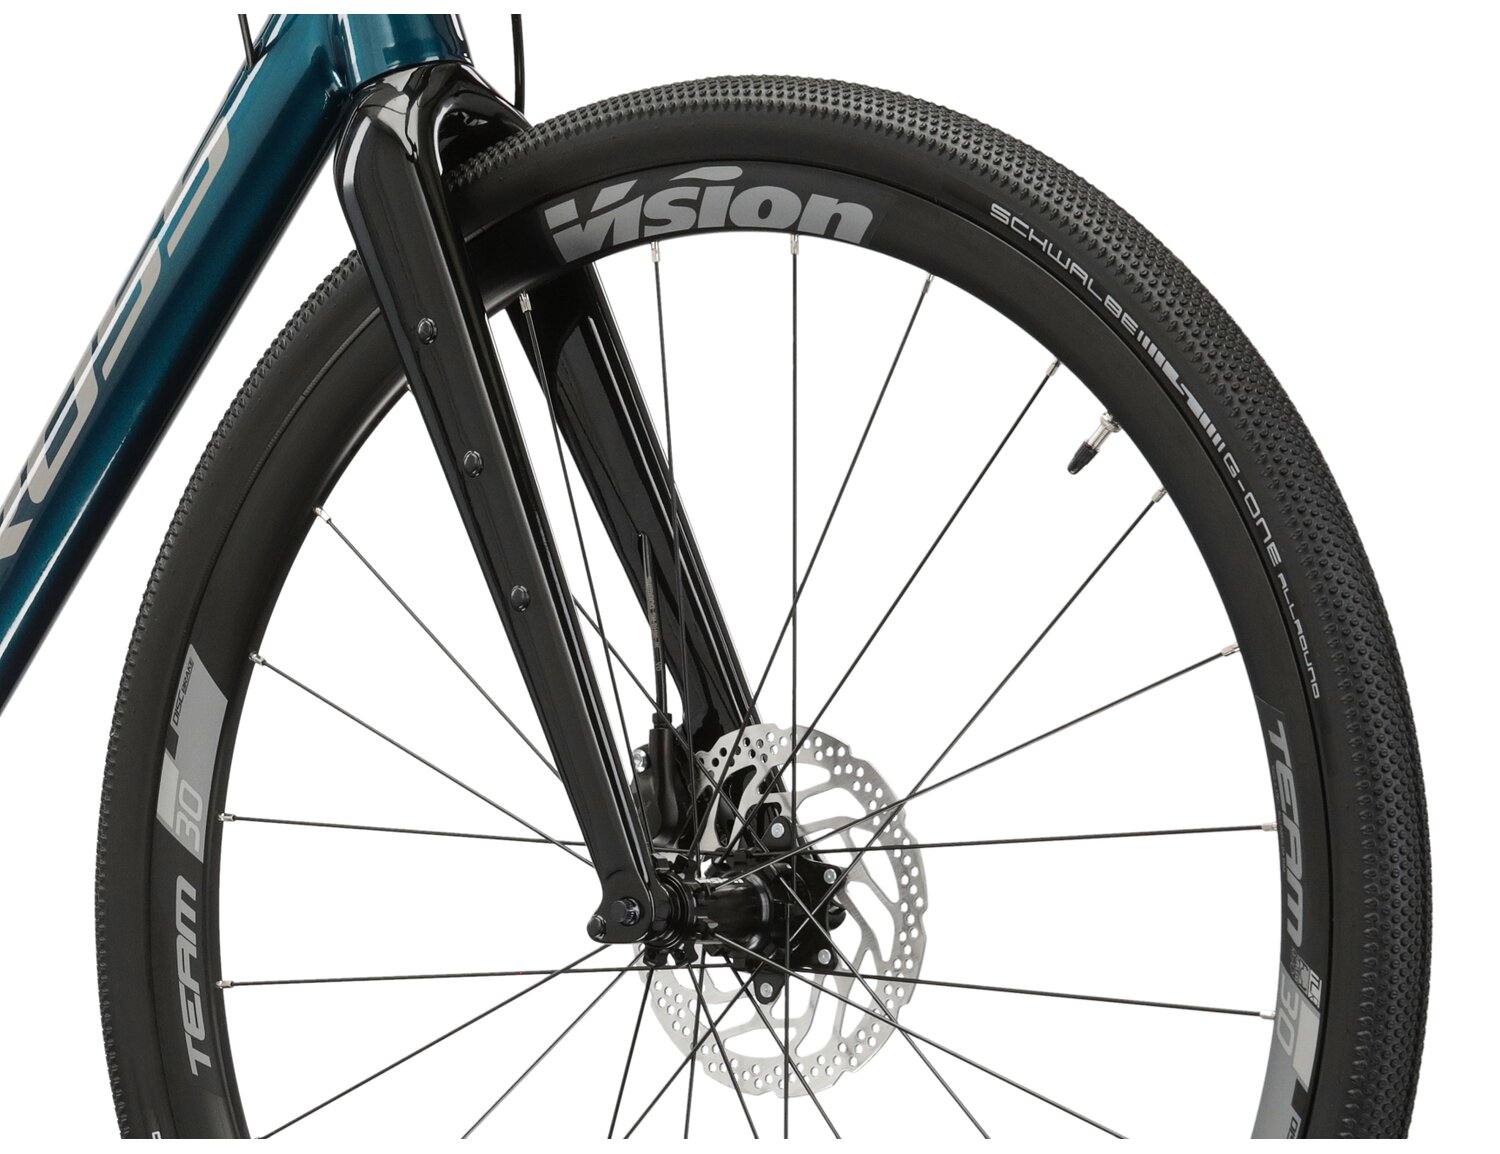  Aluminiowa rama, sztywny carbonowy widelec oraz opony Schwalbe w rowerze gravelowym KROSS Esker 5.0 